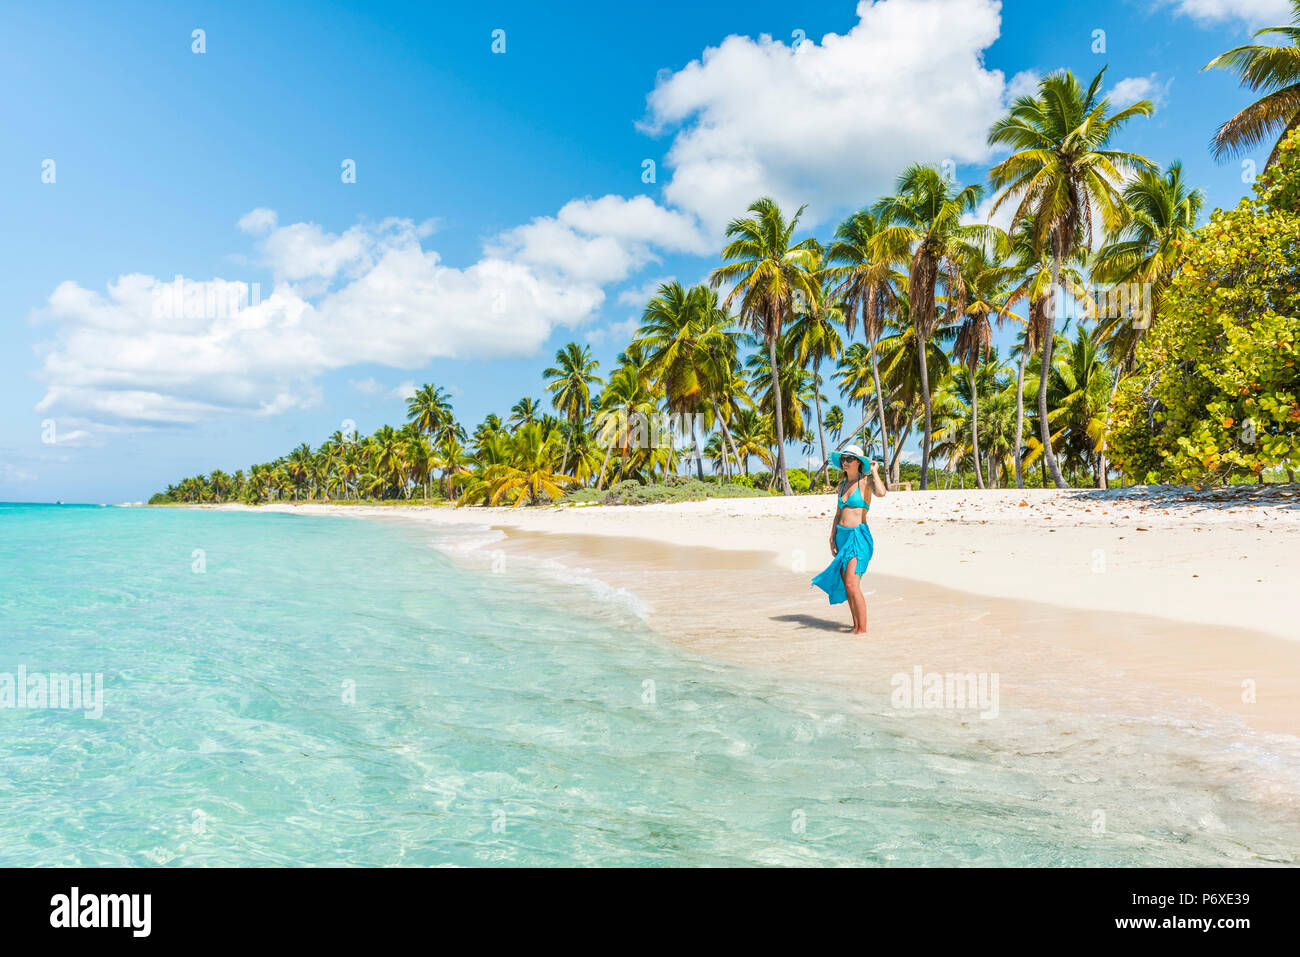 Canto de la playa, Isla Saona, East National Park (Parque Nacional del Este), en la República Dominicana, Mar Caribe. Bella mujer en una playa llena de palmeras (MR). Foto de stock